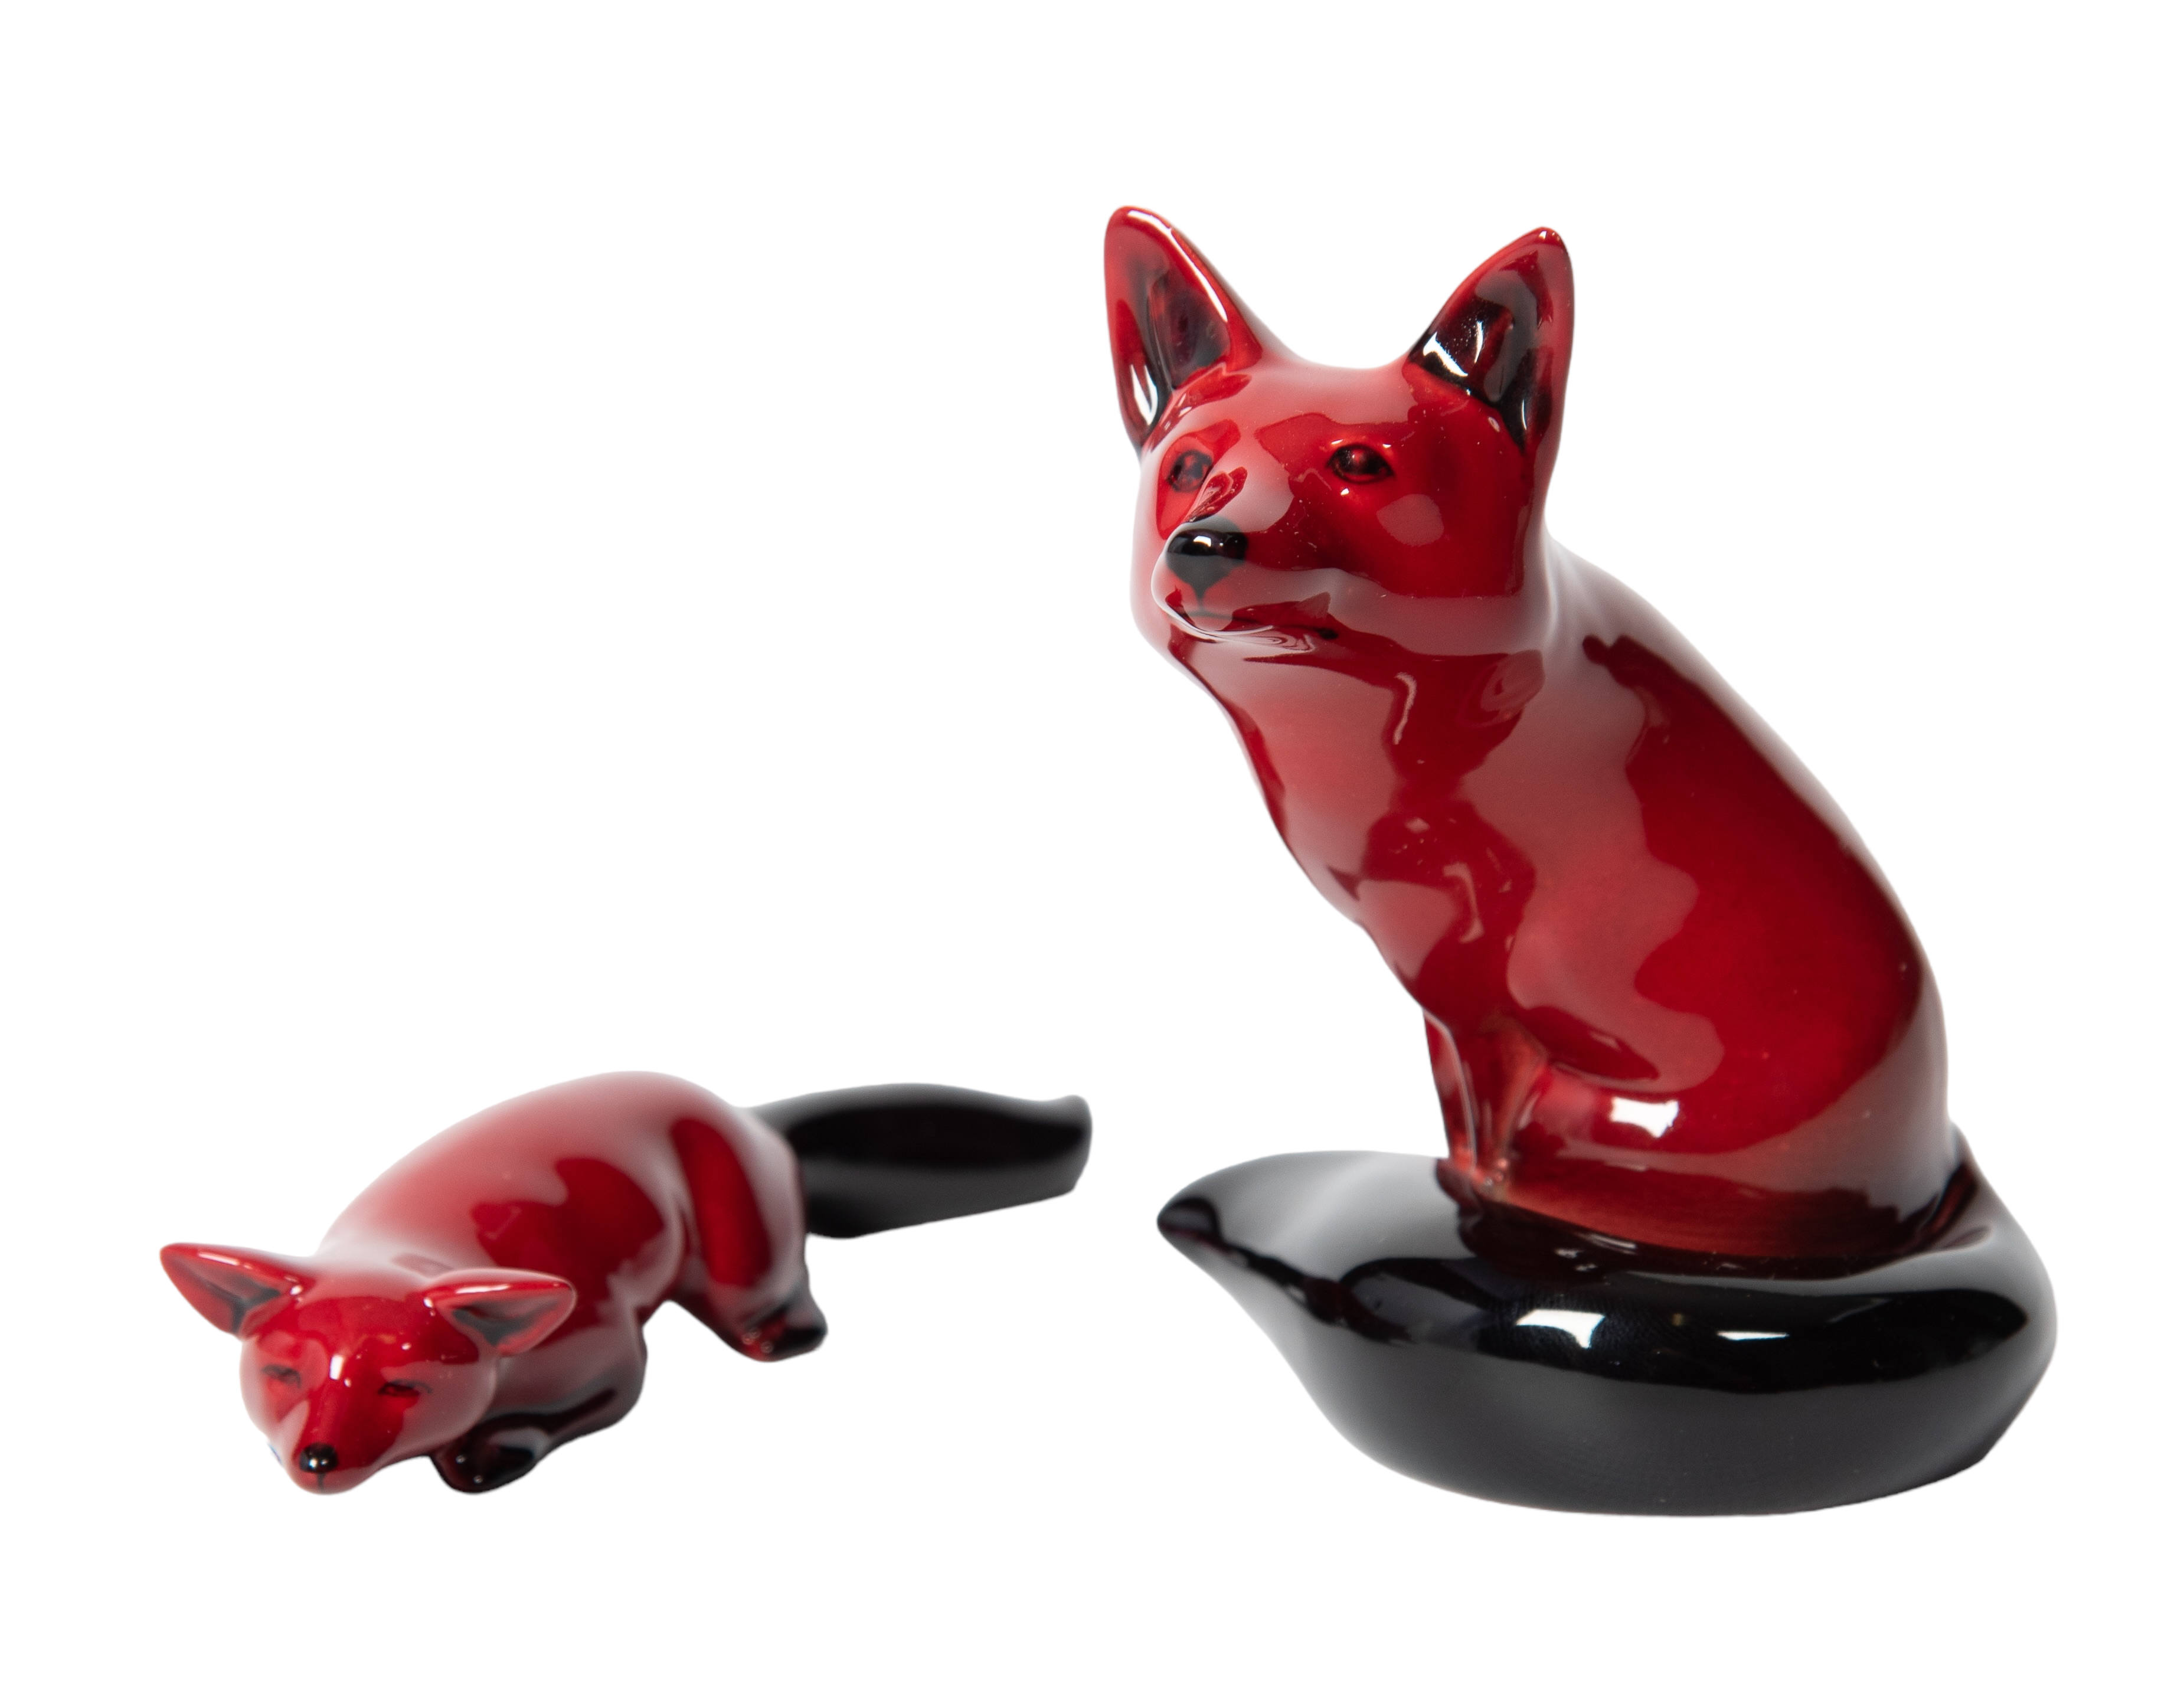  2 Royal Doulton Flambe fox figurines  3b1971